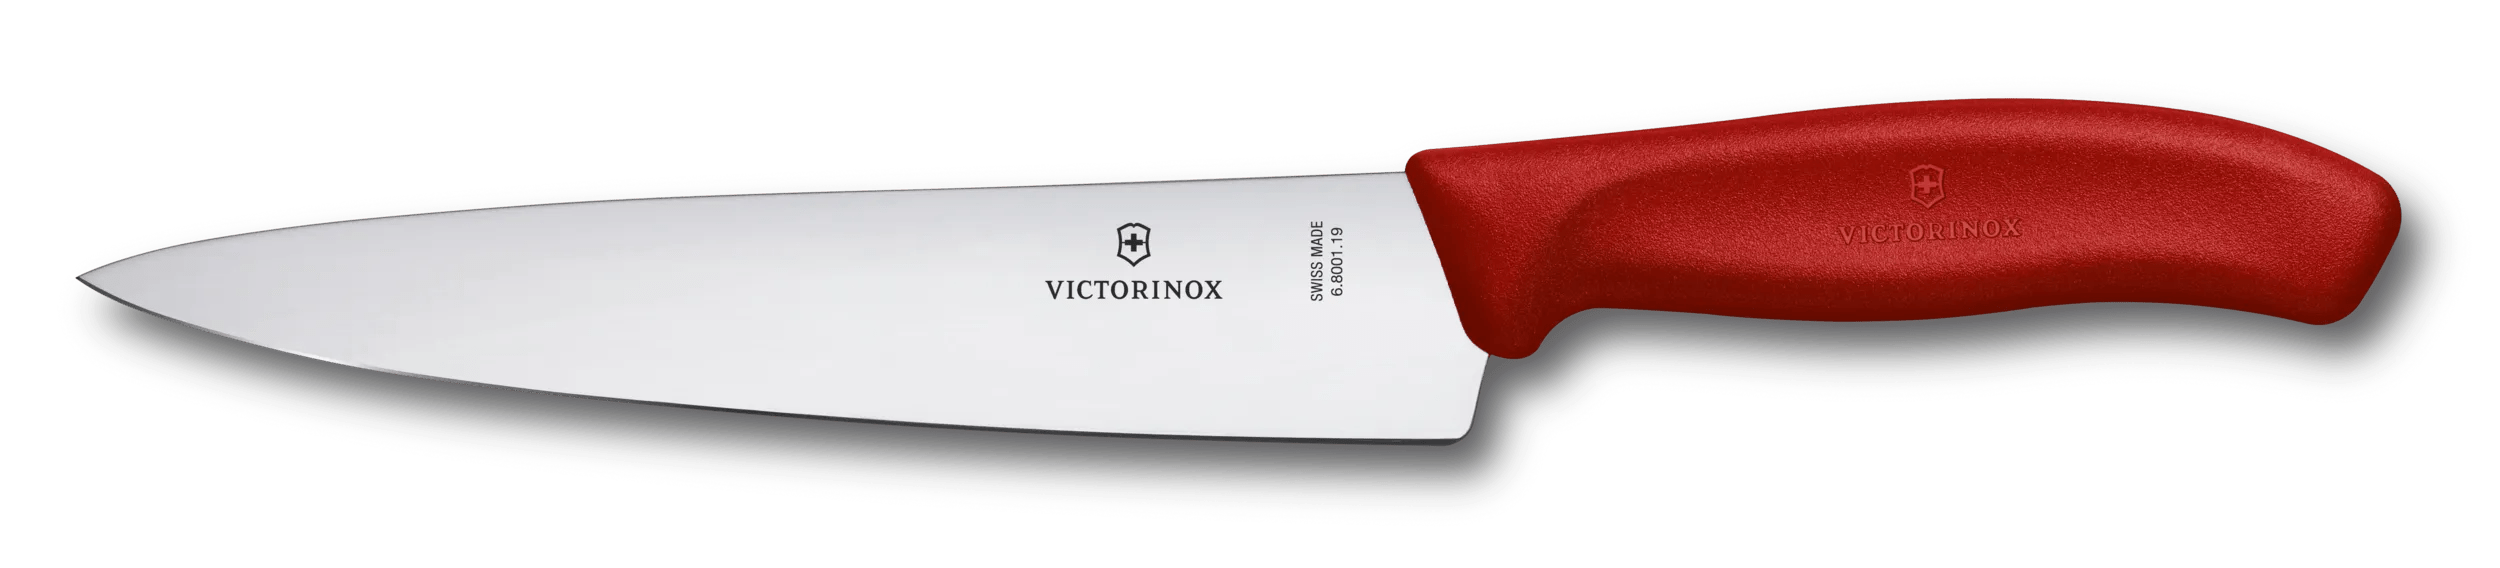 Victorinox スイスクラシック シェフナイフ レッド - 6.8001.19B